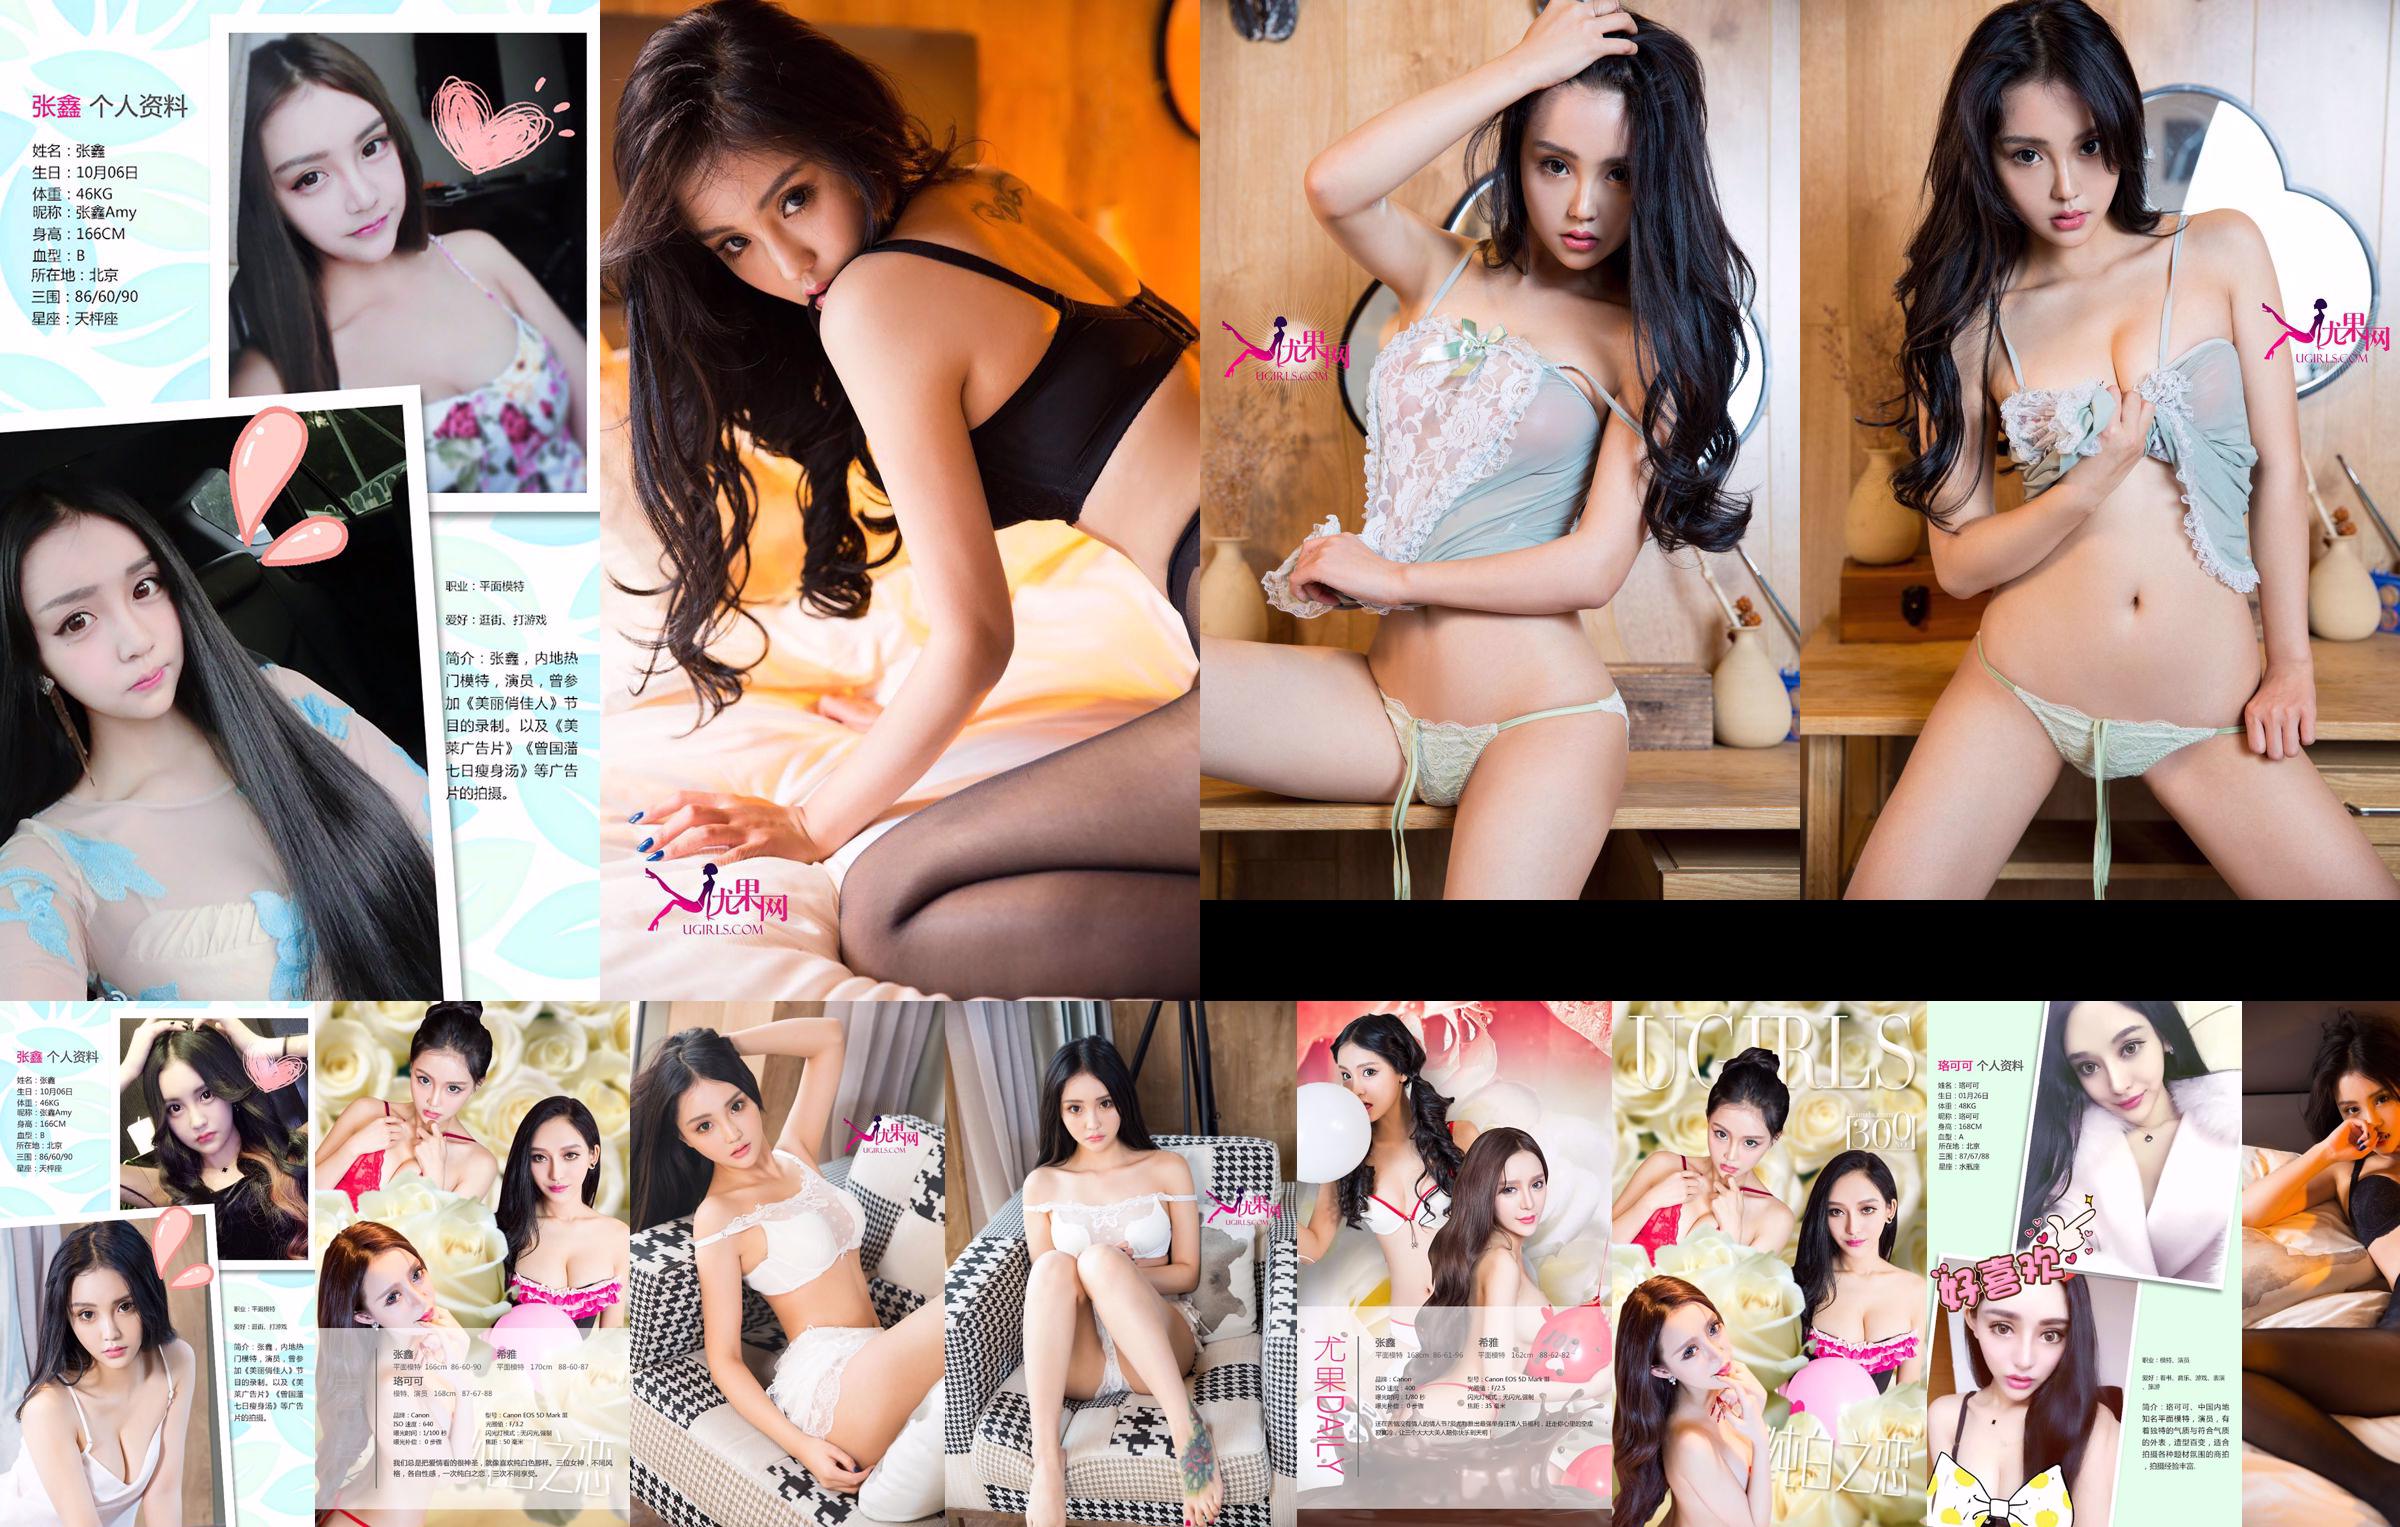 Zhang Xin "Doting" [Love Youwu Ugirls] N ° 223 No.9f86ef Page 8